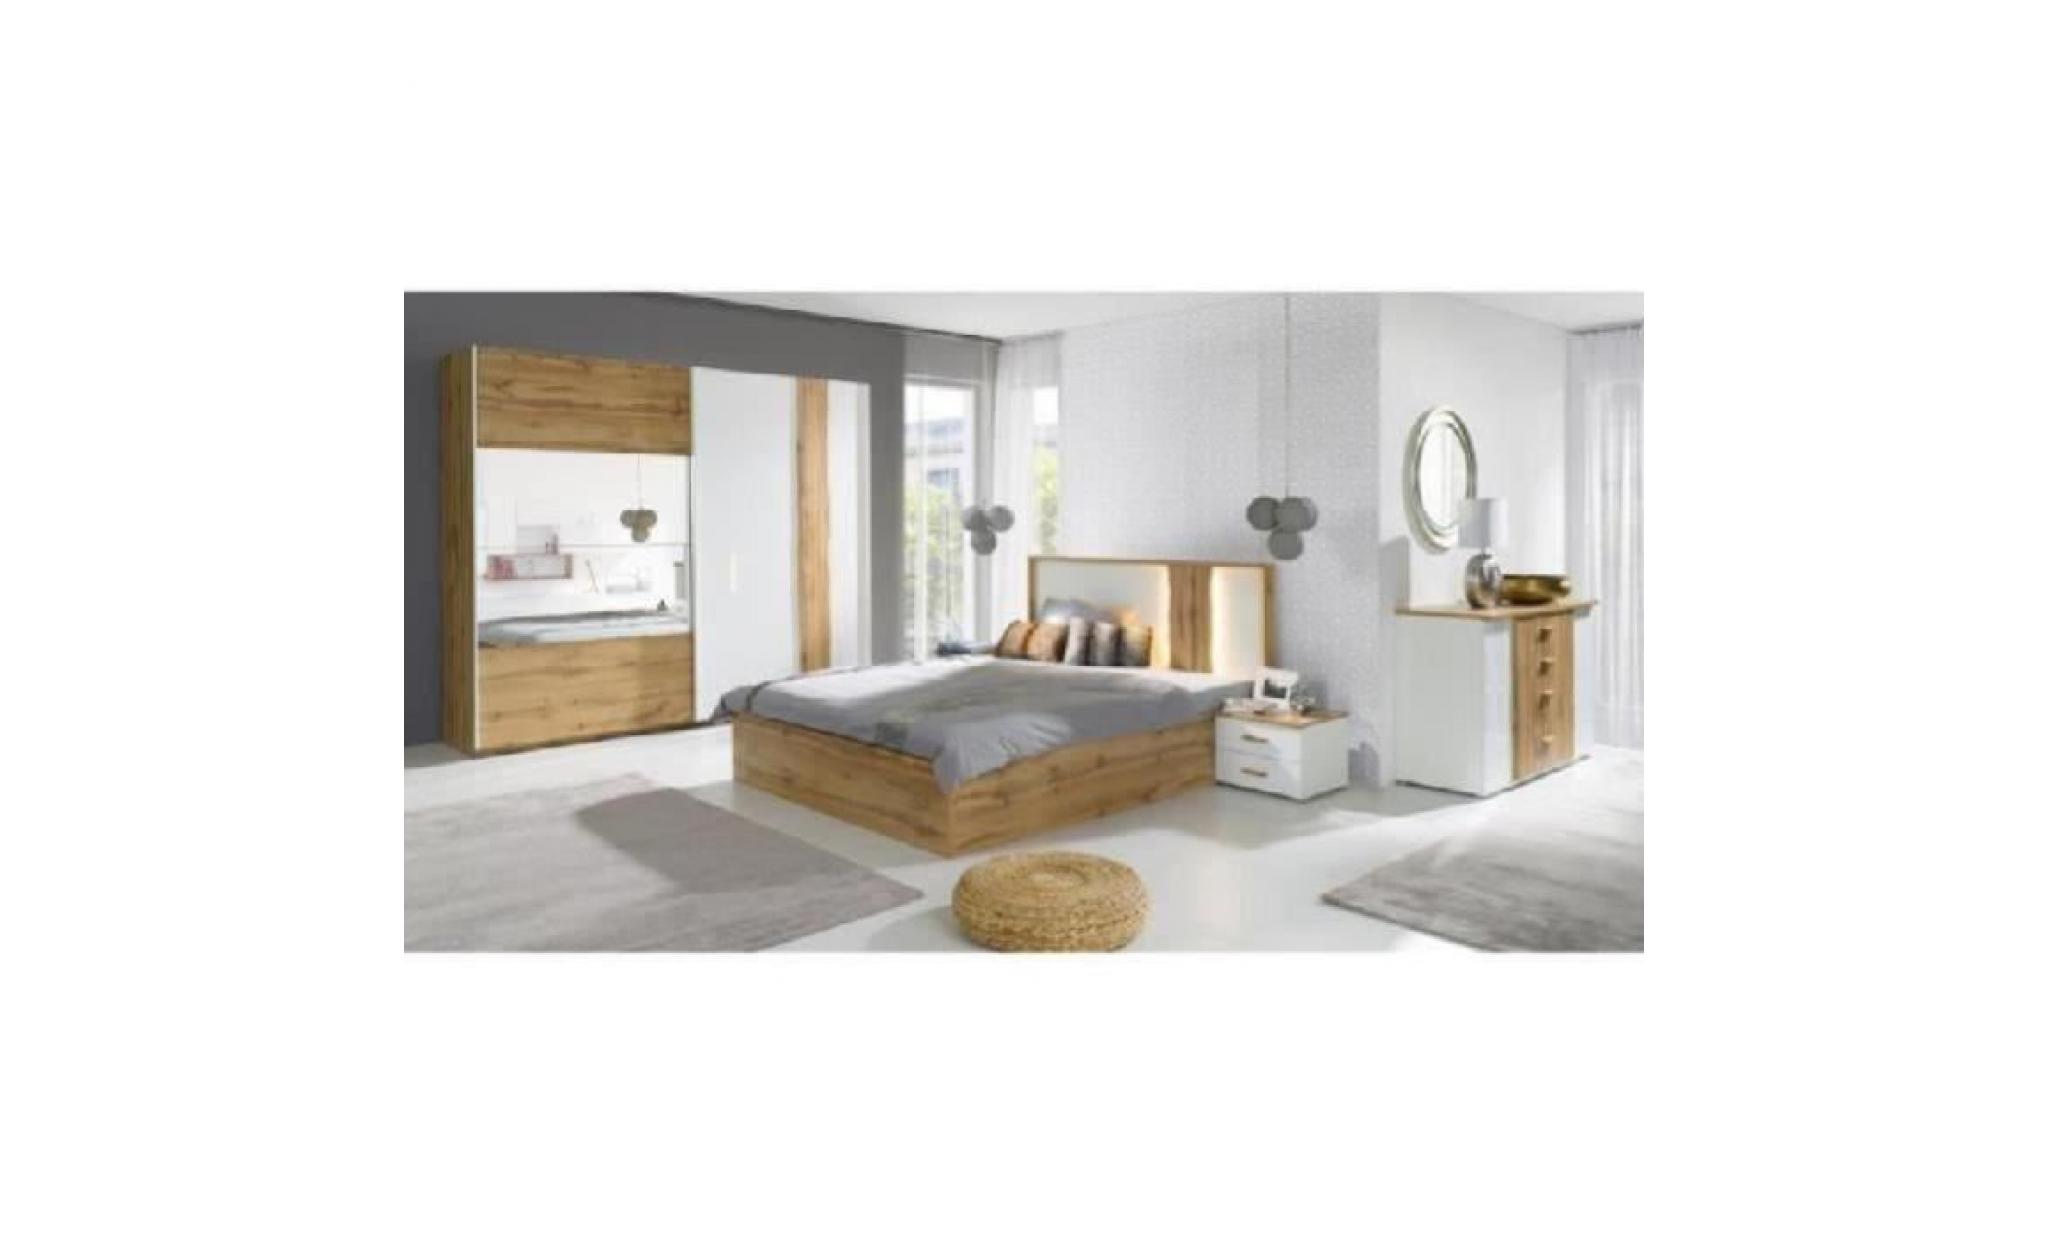 price factory chambre à coucher complète wood chêne et blanc. lit coffre 160x200 cm + sommier + armoire 200 cm + commode + 2 chevets